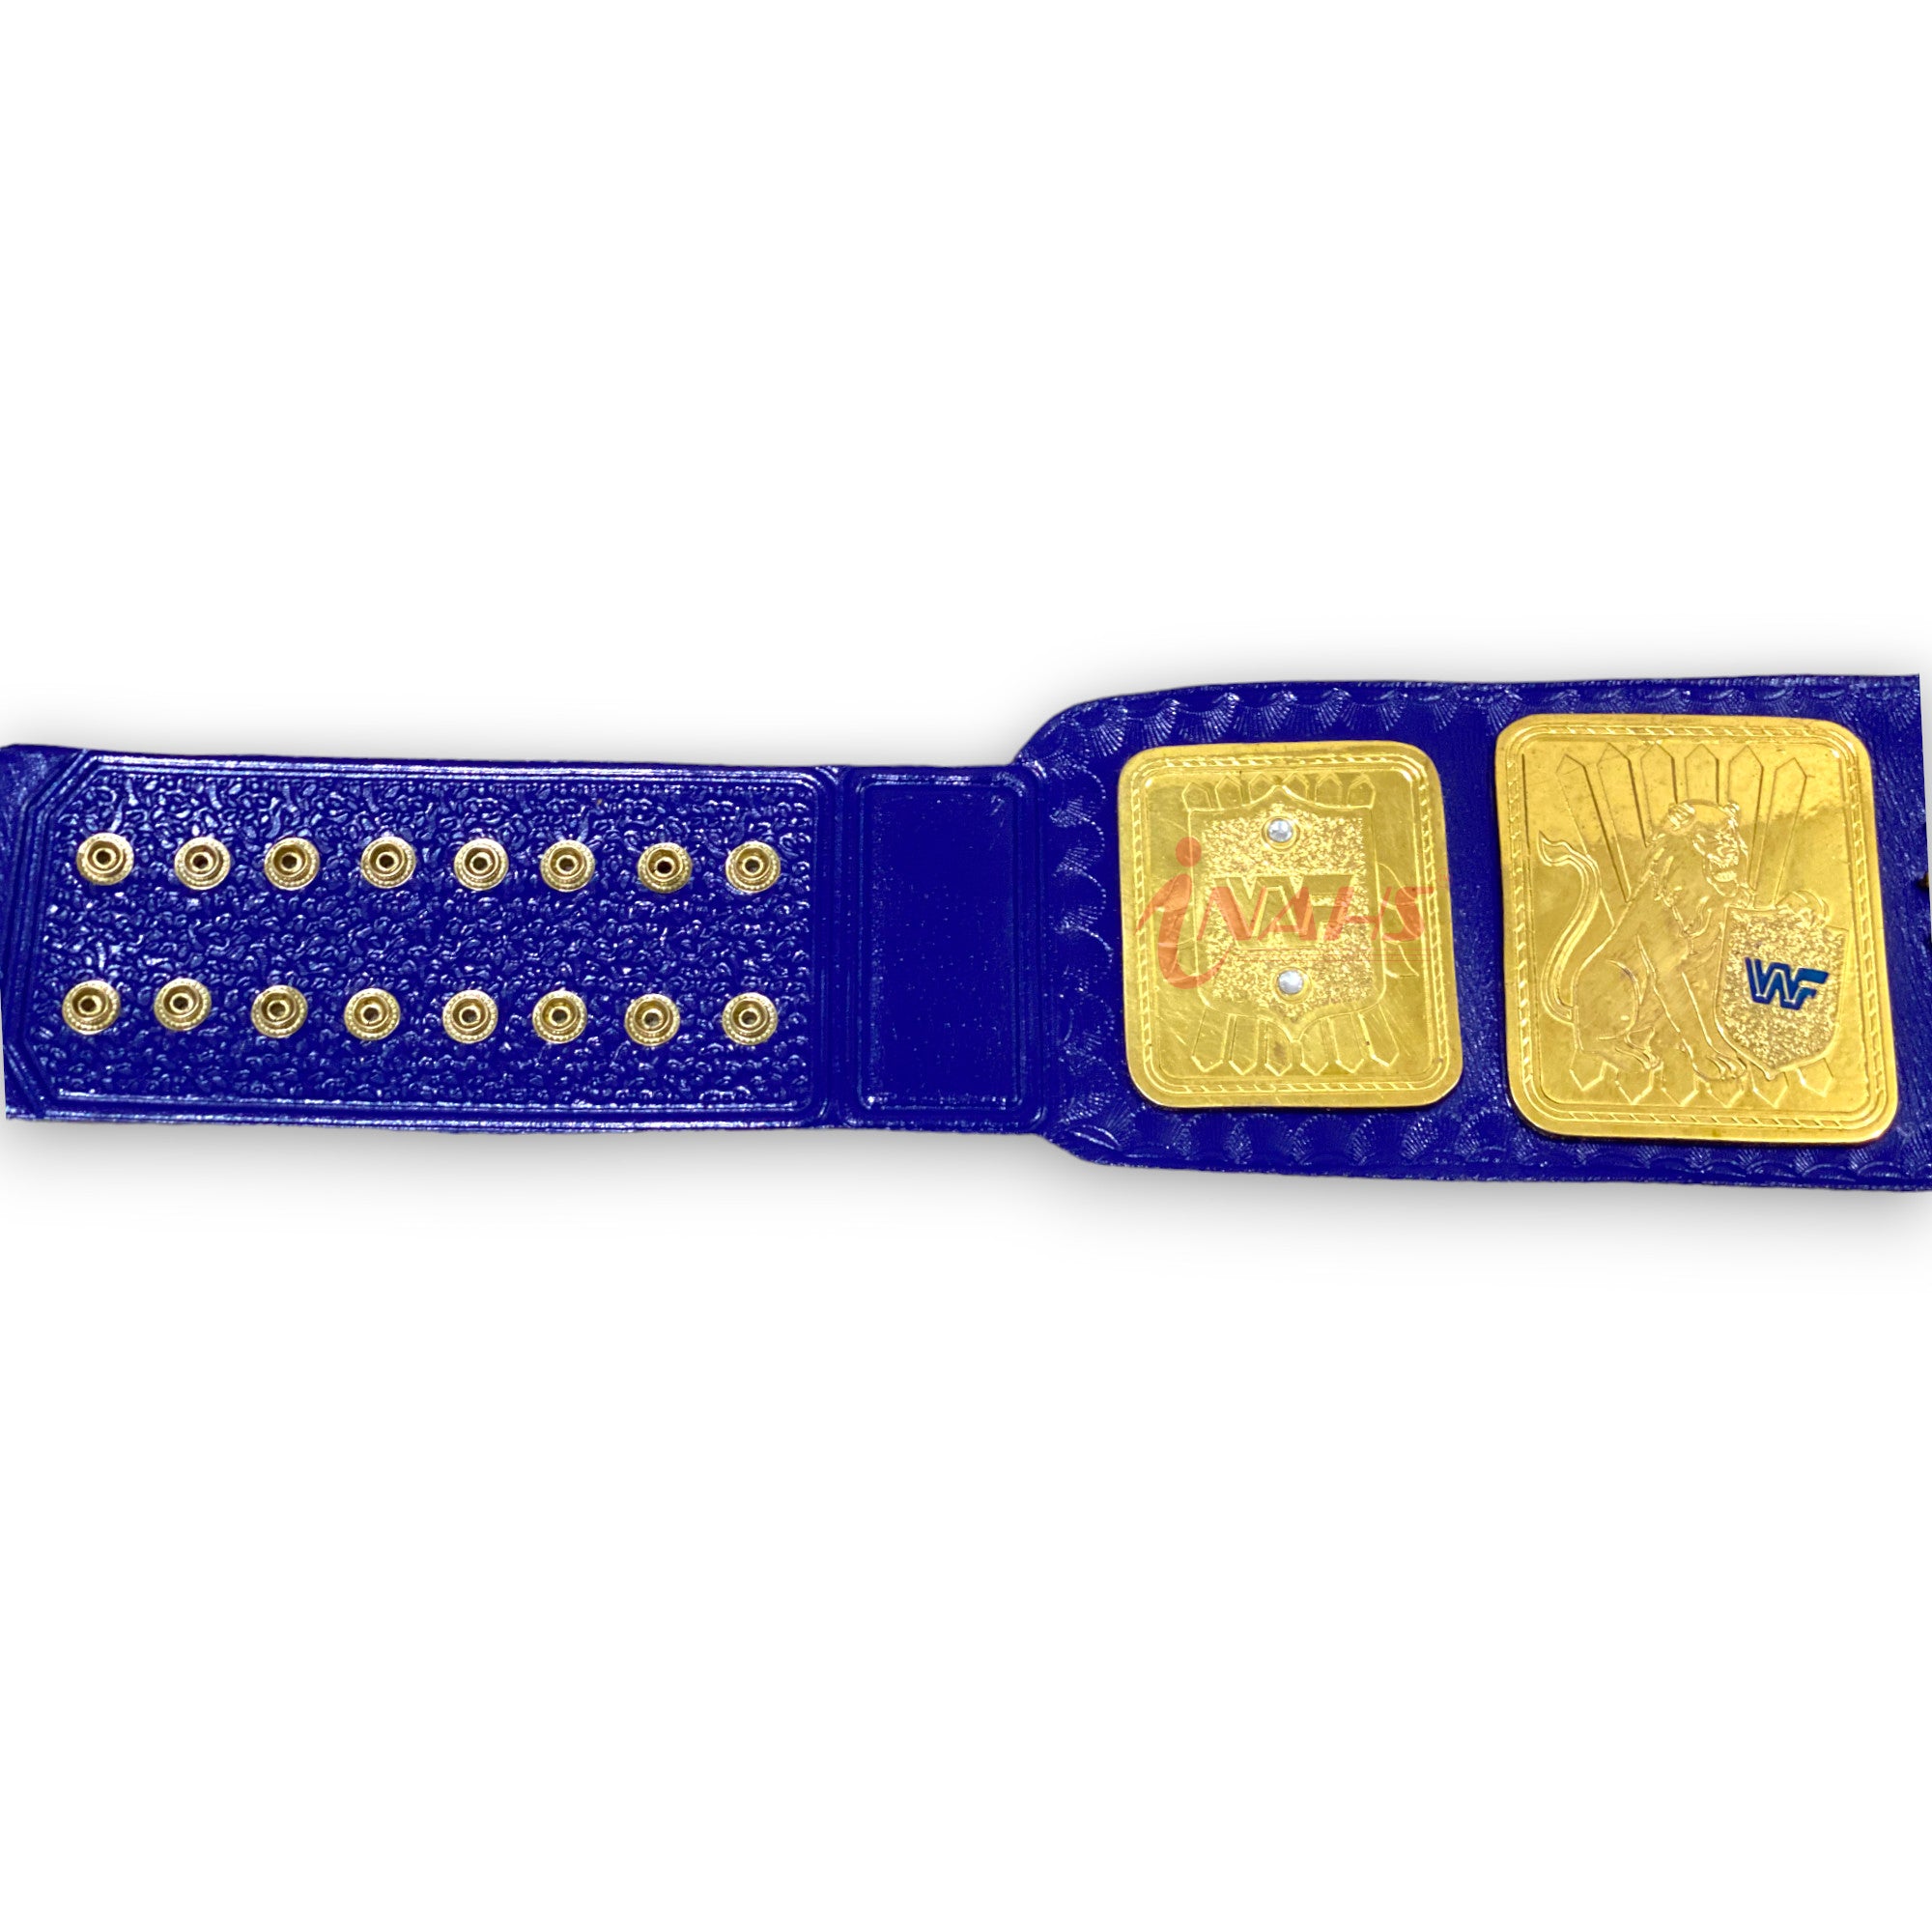 WWF Block Logo Big Eagle Wrestling Championship Belt Real Blue Leather Strap Adult Size